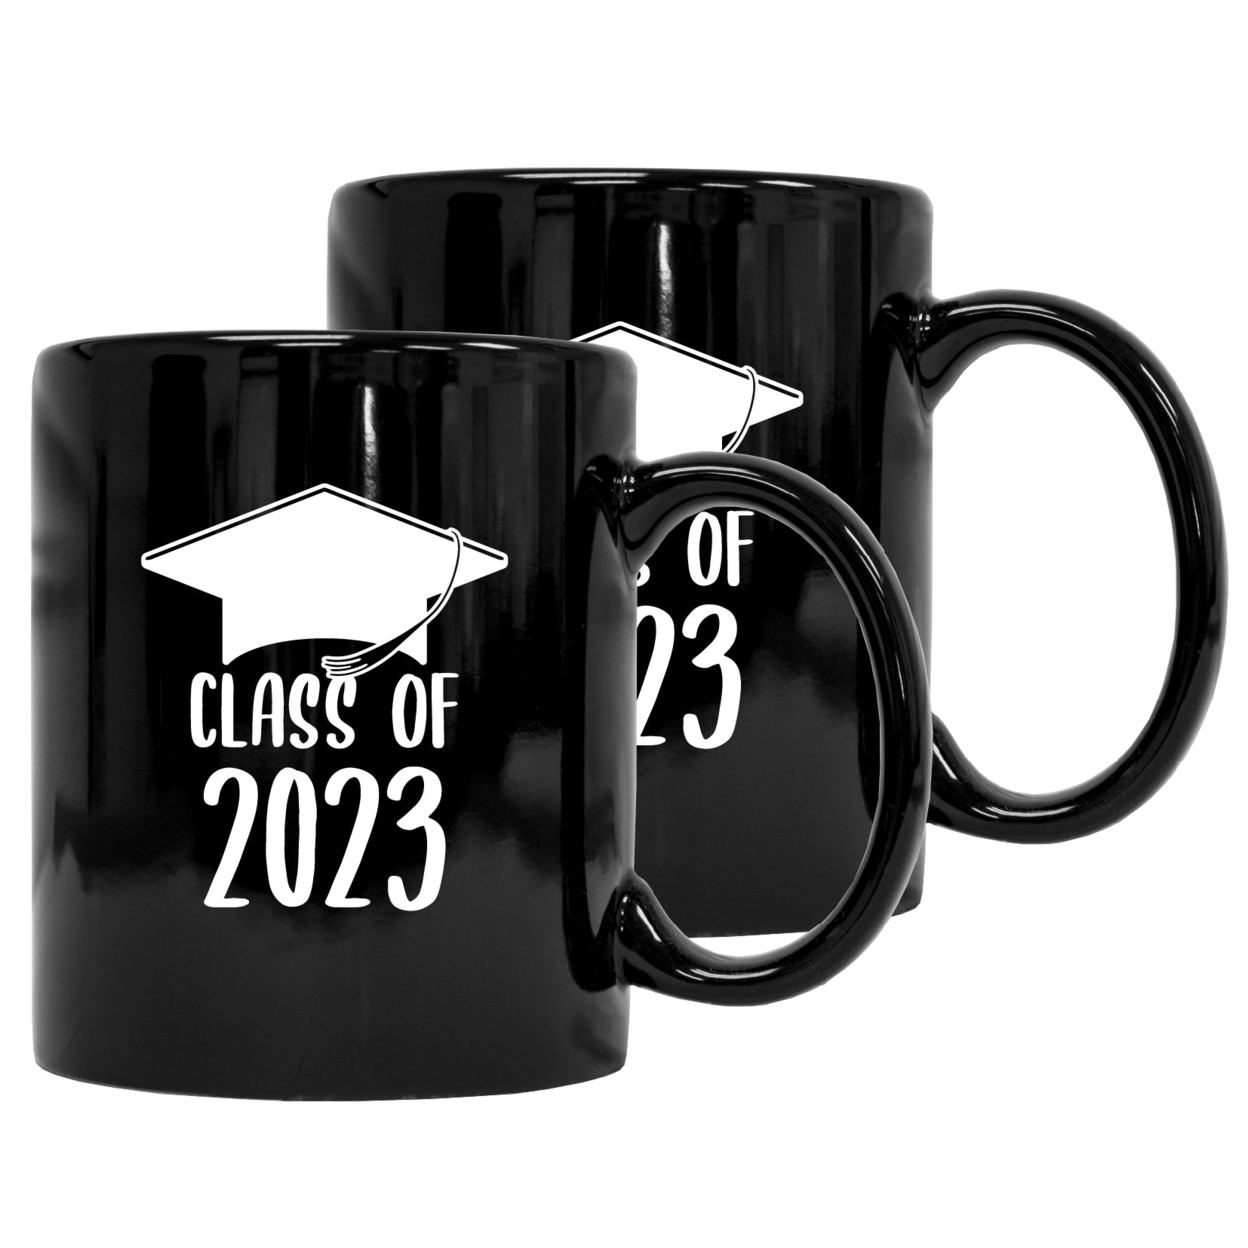 Class Of 2023 Graduation 12 Oz Ceramic Coffee Mug - Black/A, Single